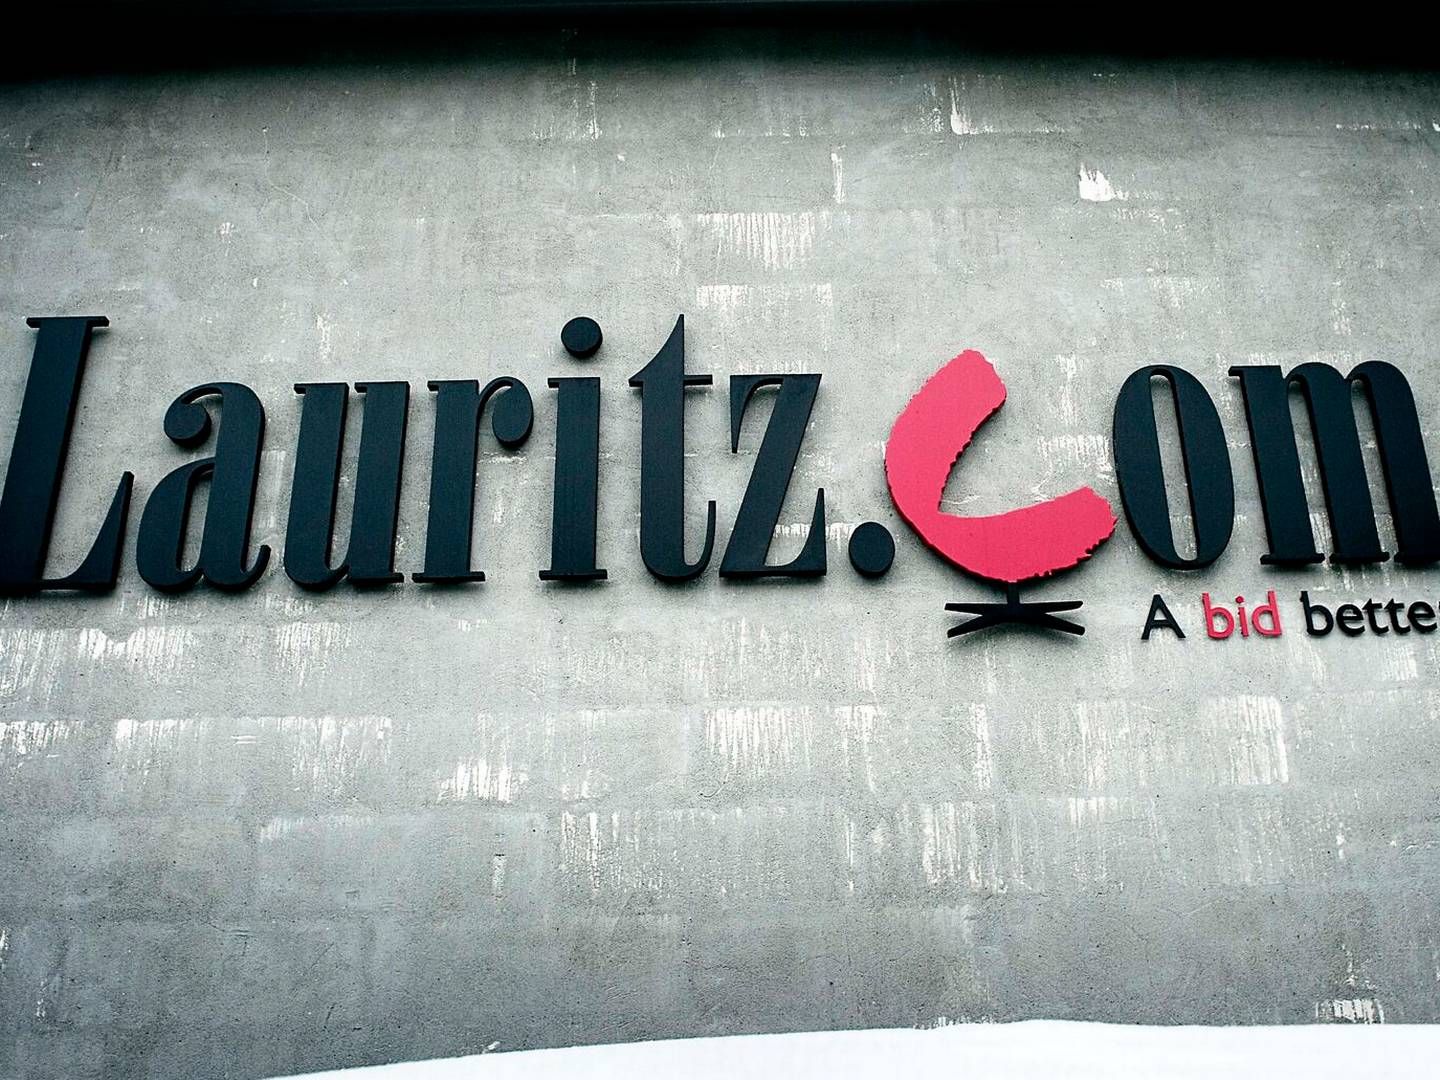 Lauritz.coms gæld er opgjort til 148,6 mio. kr. | Foto: Jens Dige/ritzau Scanpix